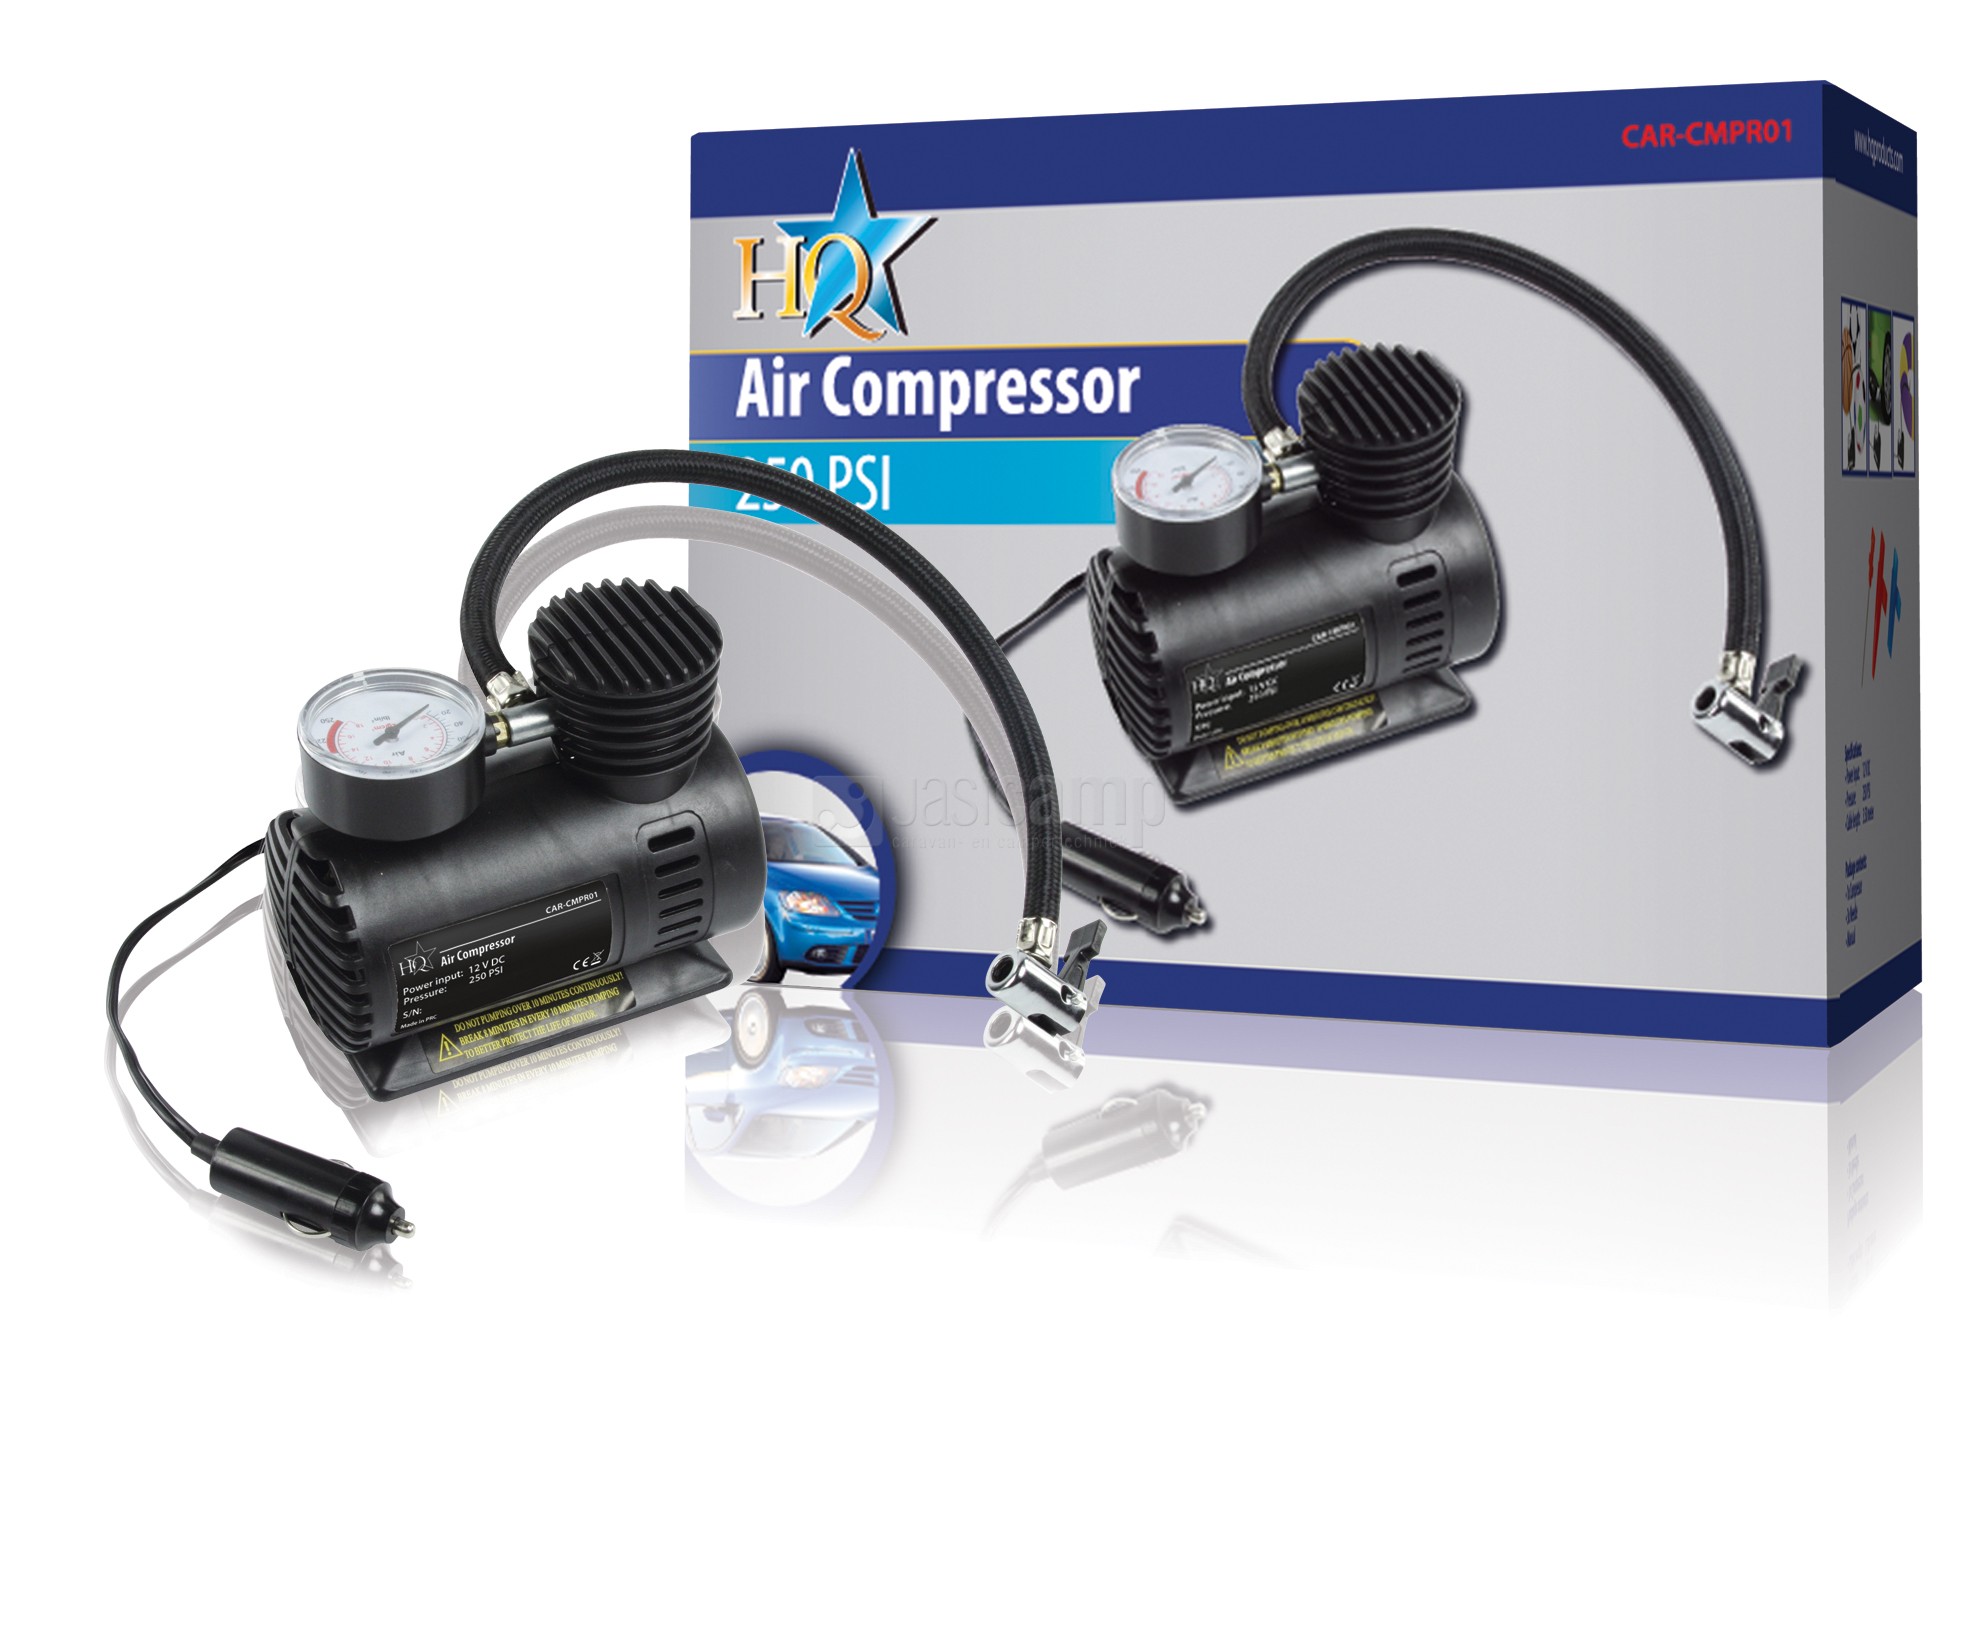 Compressor 12V 250 psi 10bar voor oppompen van banden en luchtvering. ( verschillende modellen, zelfde eigenschappen) .
